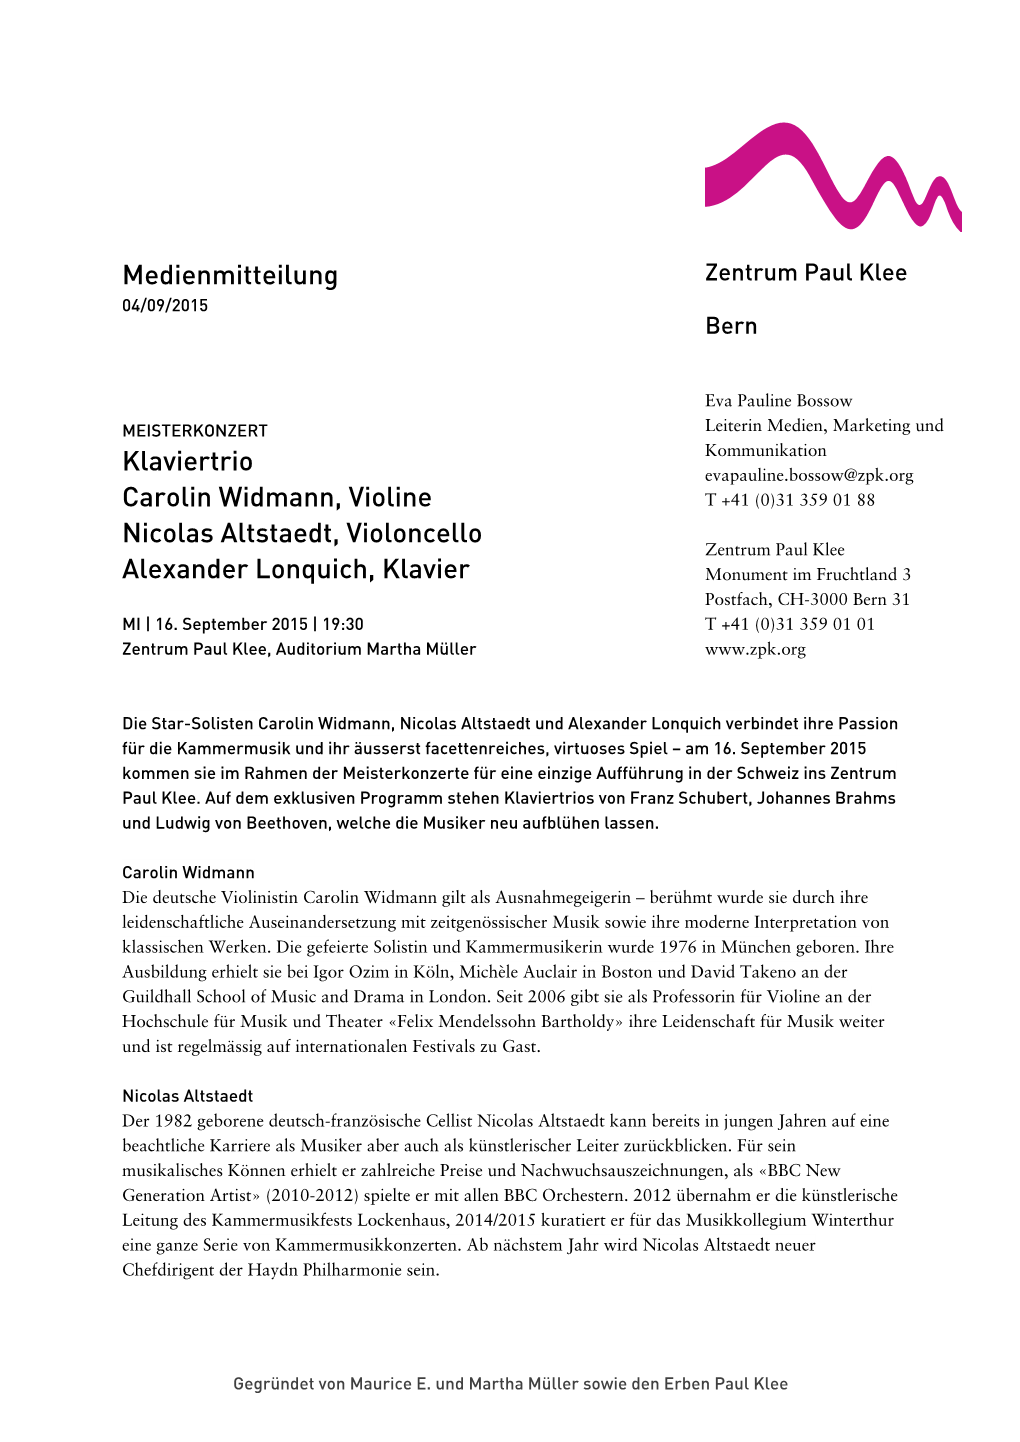 Medienmitteilung Klaviertrio Carolin Widmann, Violine Nicolas Altstaedt